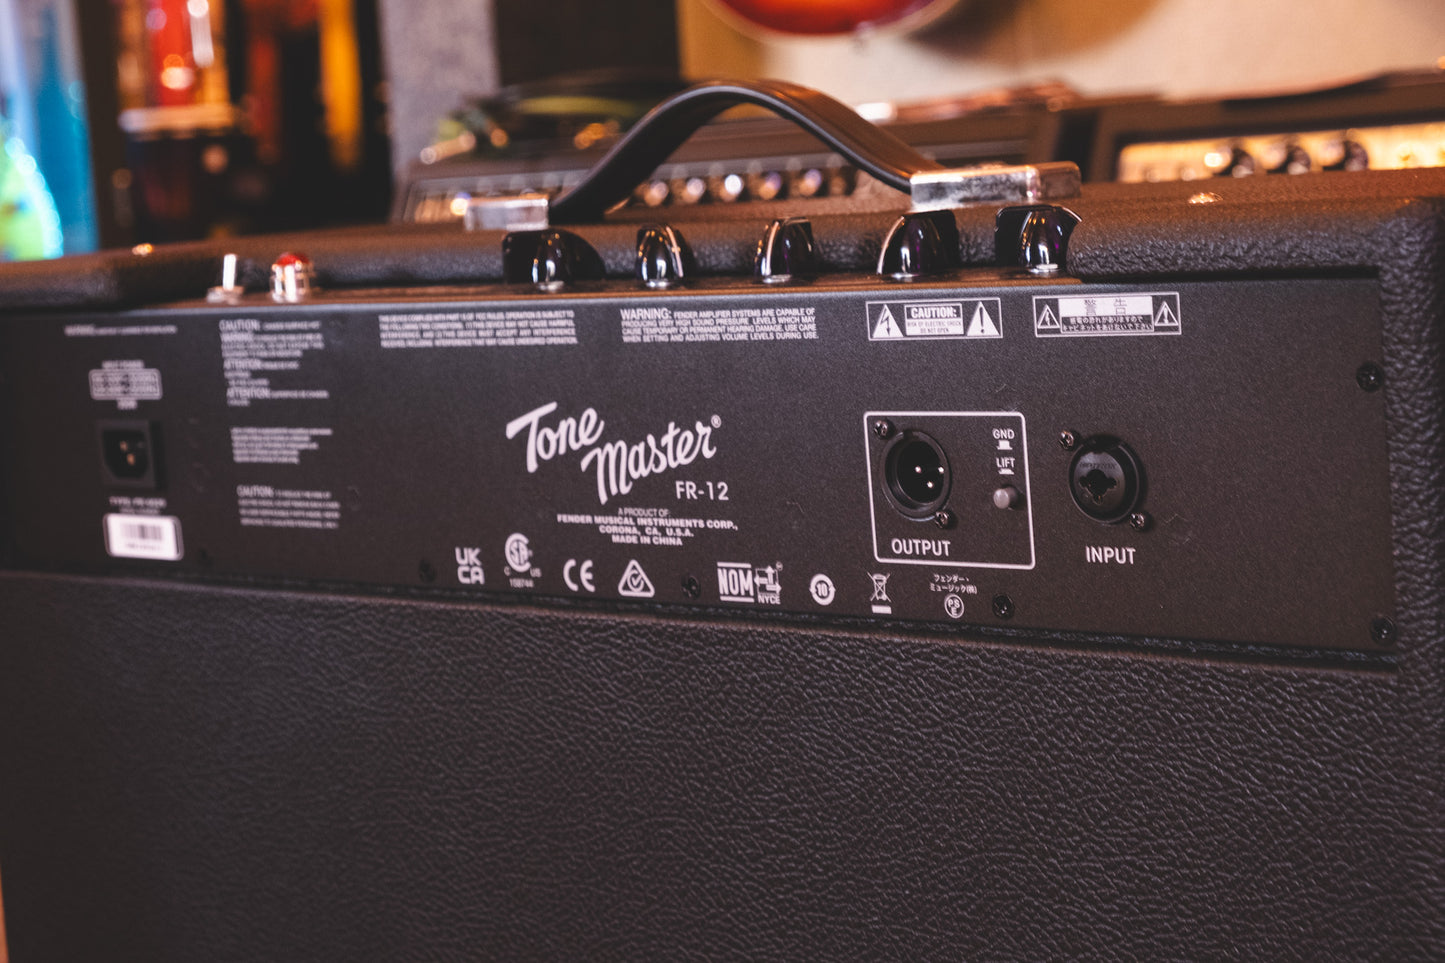 Fender Tone Master FR12 1x12 Flat Response Powered Speaker